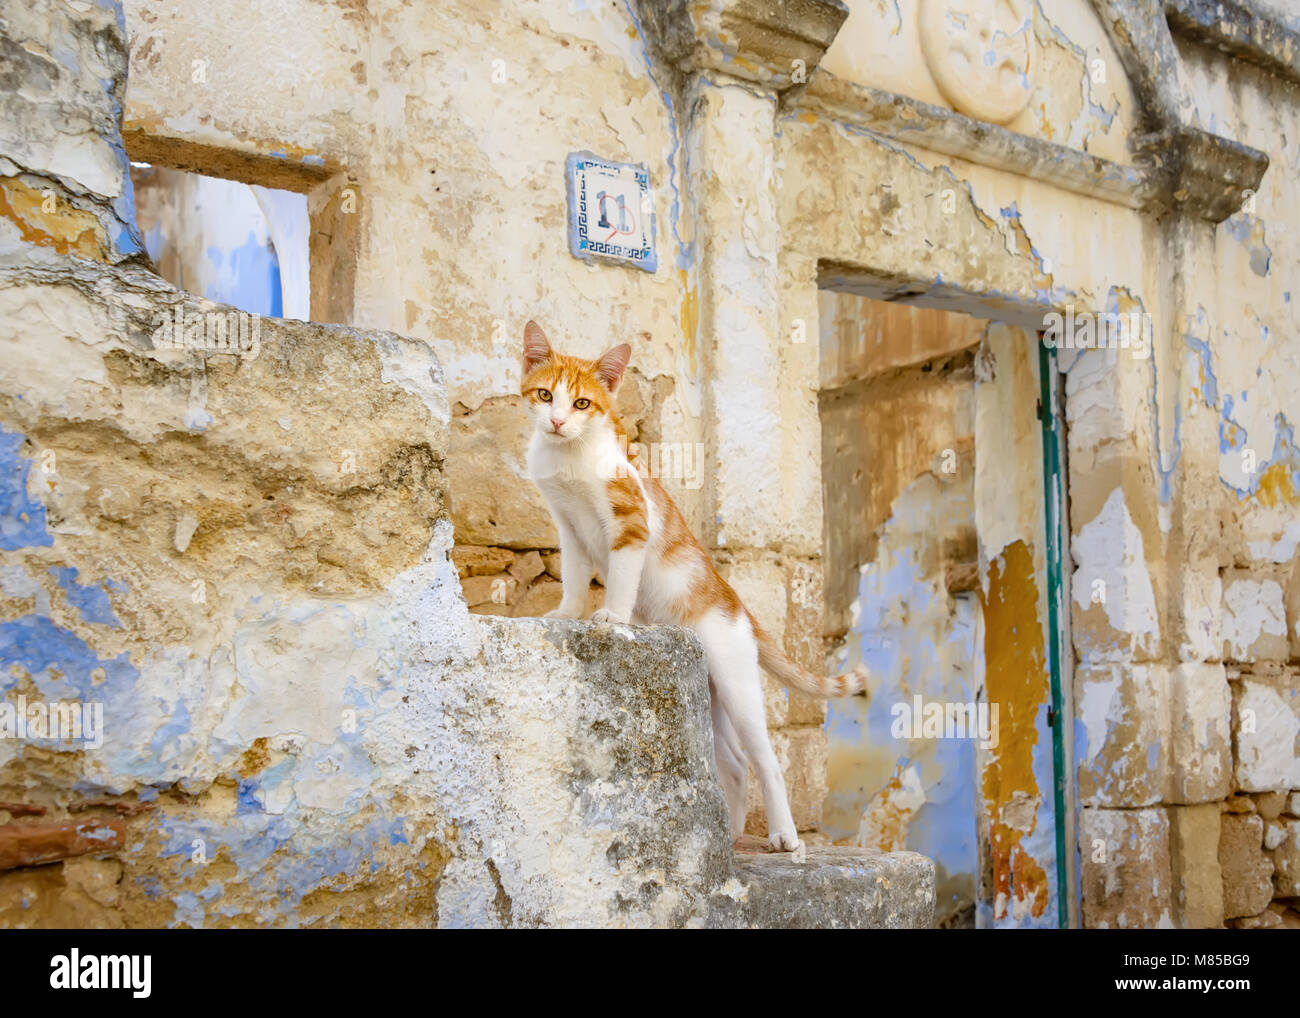 Chat mignon chaton, red tabby avec blanc, debout sur les escaliers en face d'une vieille maison abandonnée, l'île grecque de Rhodes, Dodécanèse, Grèce, Europe Banque D'Images